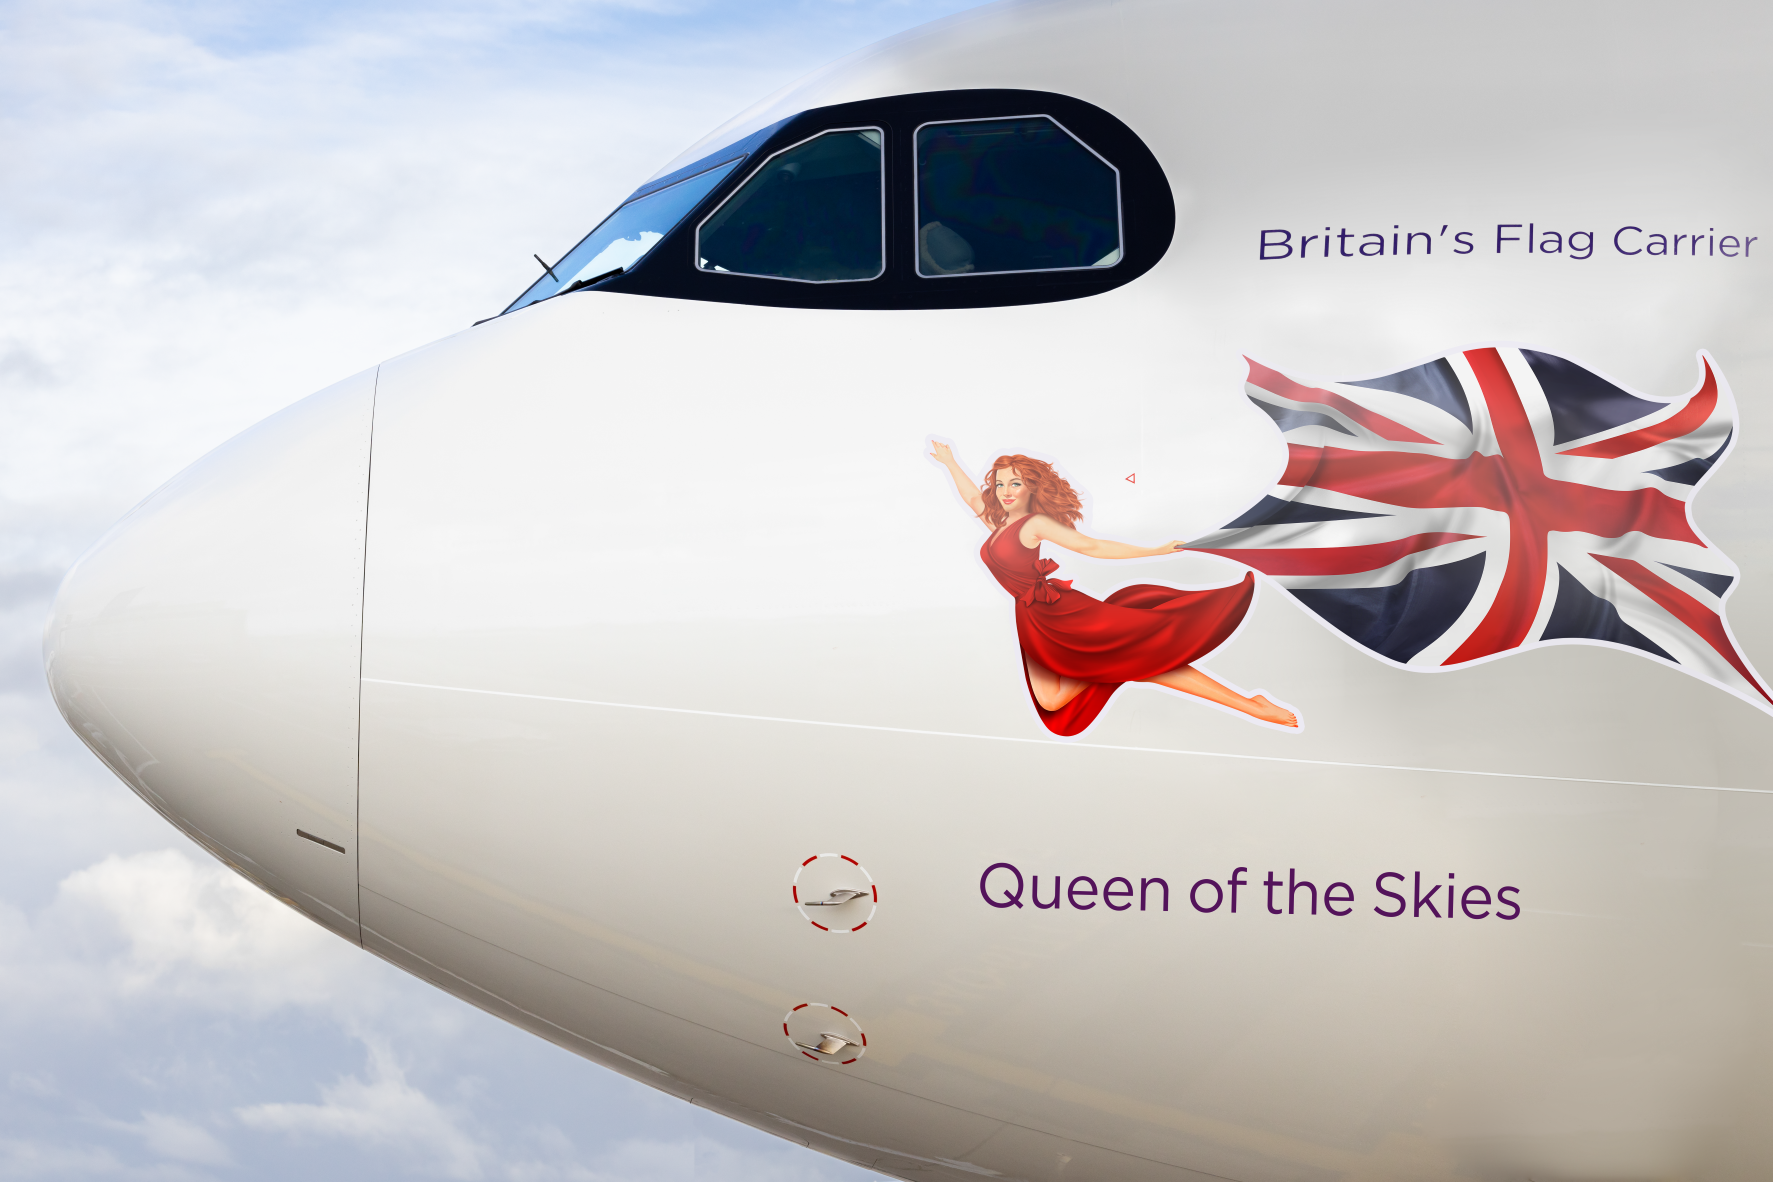 NEWS: Virgin Atlantic's tribute to Queen, BA no longer sending